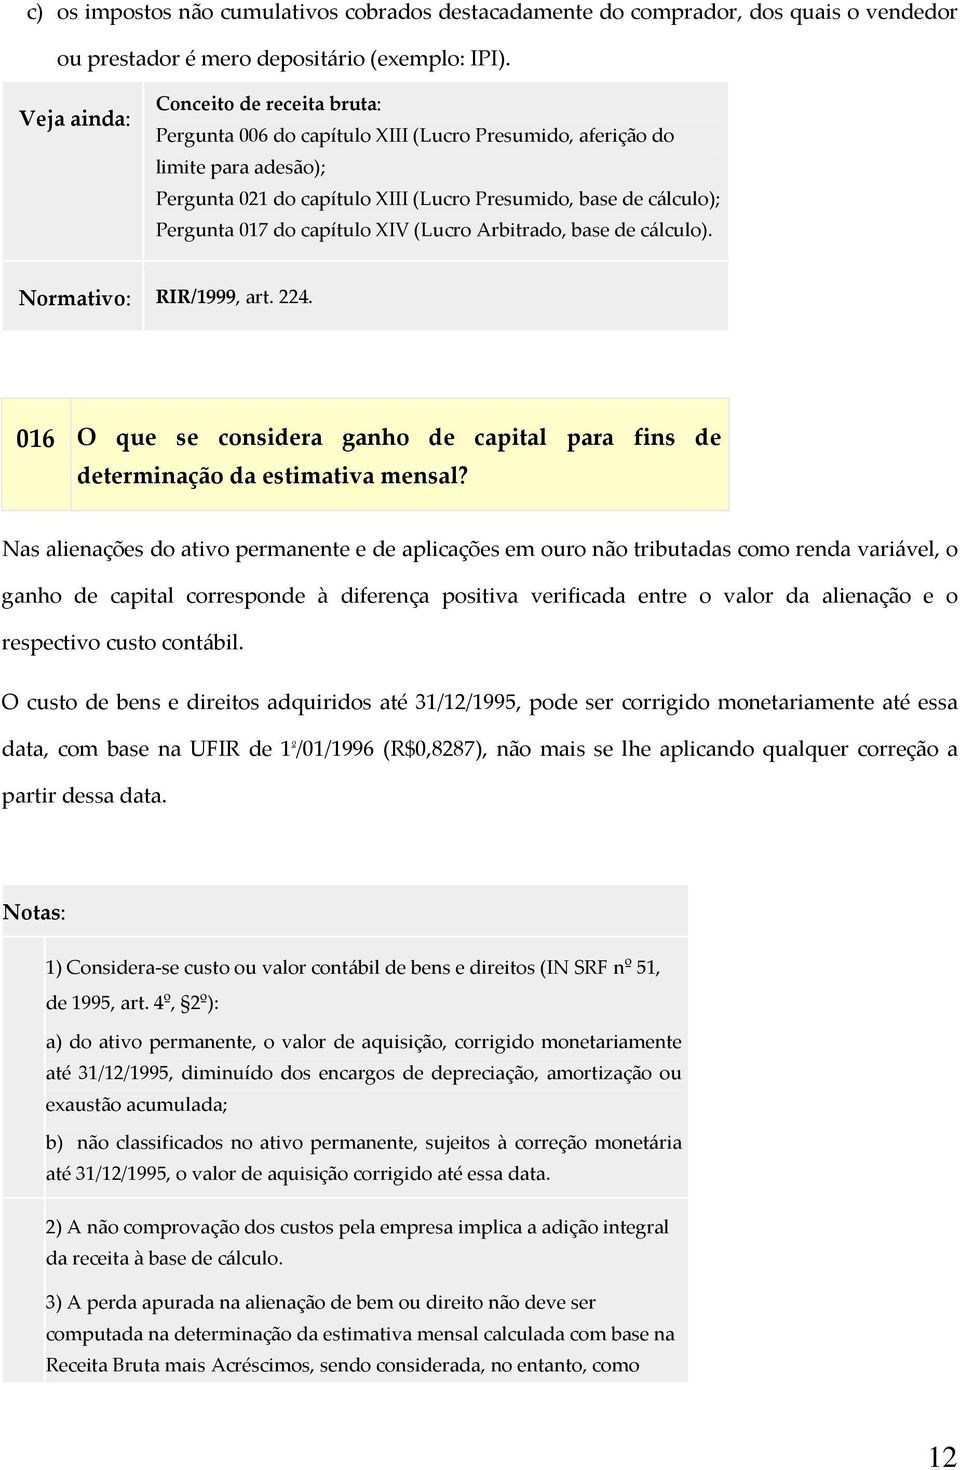 XIV (Lucro Arbitrado, base de cálculo). Normativo: RIR/1999, art. 224. 016 O que se considera ganho de capital para fins de determinação da estimativa mensal?